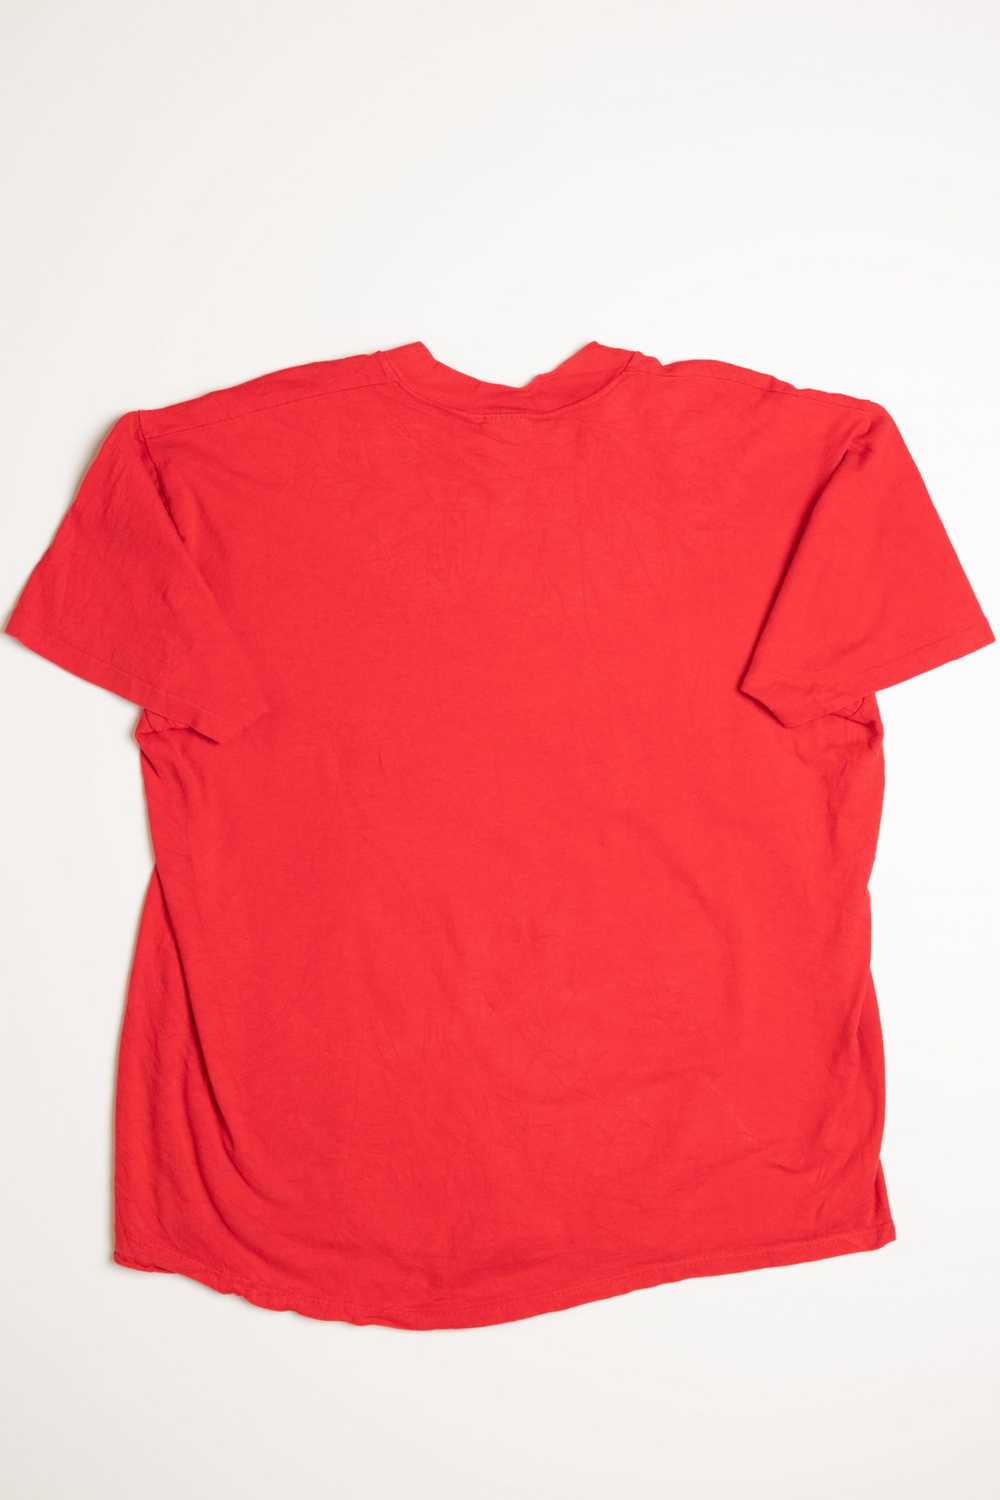 Velva Sheen T-Shirt - image 2